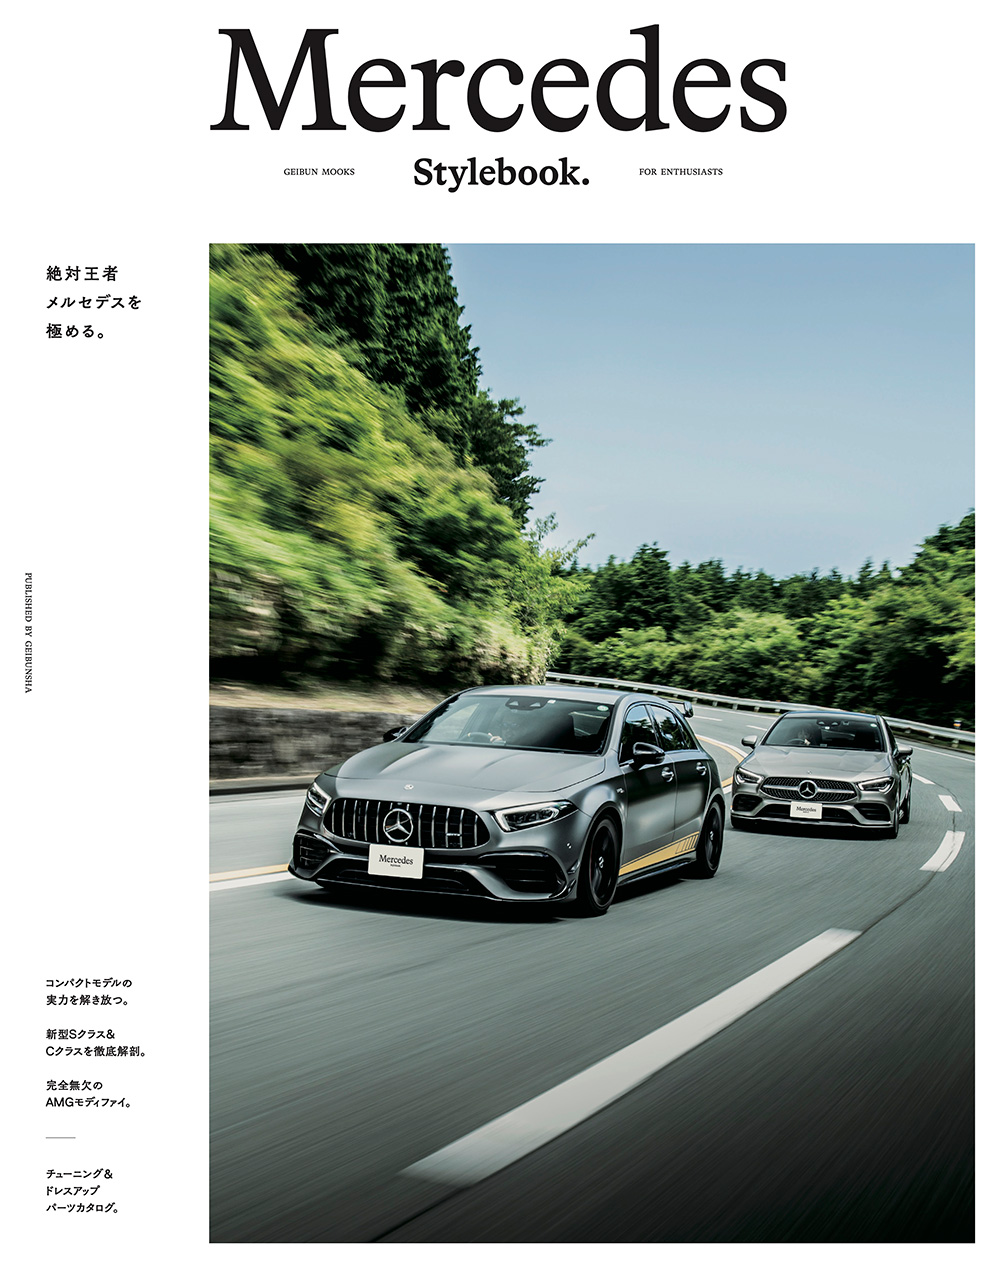 【メディア掲載情報】「Mercedes Stylebook.」に掲載されました。